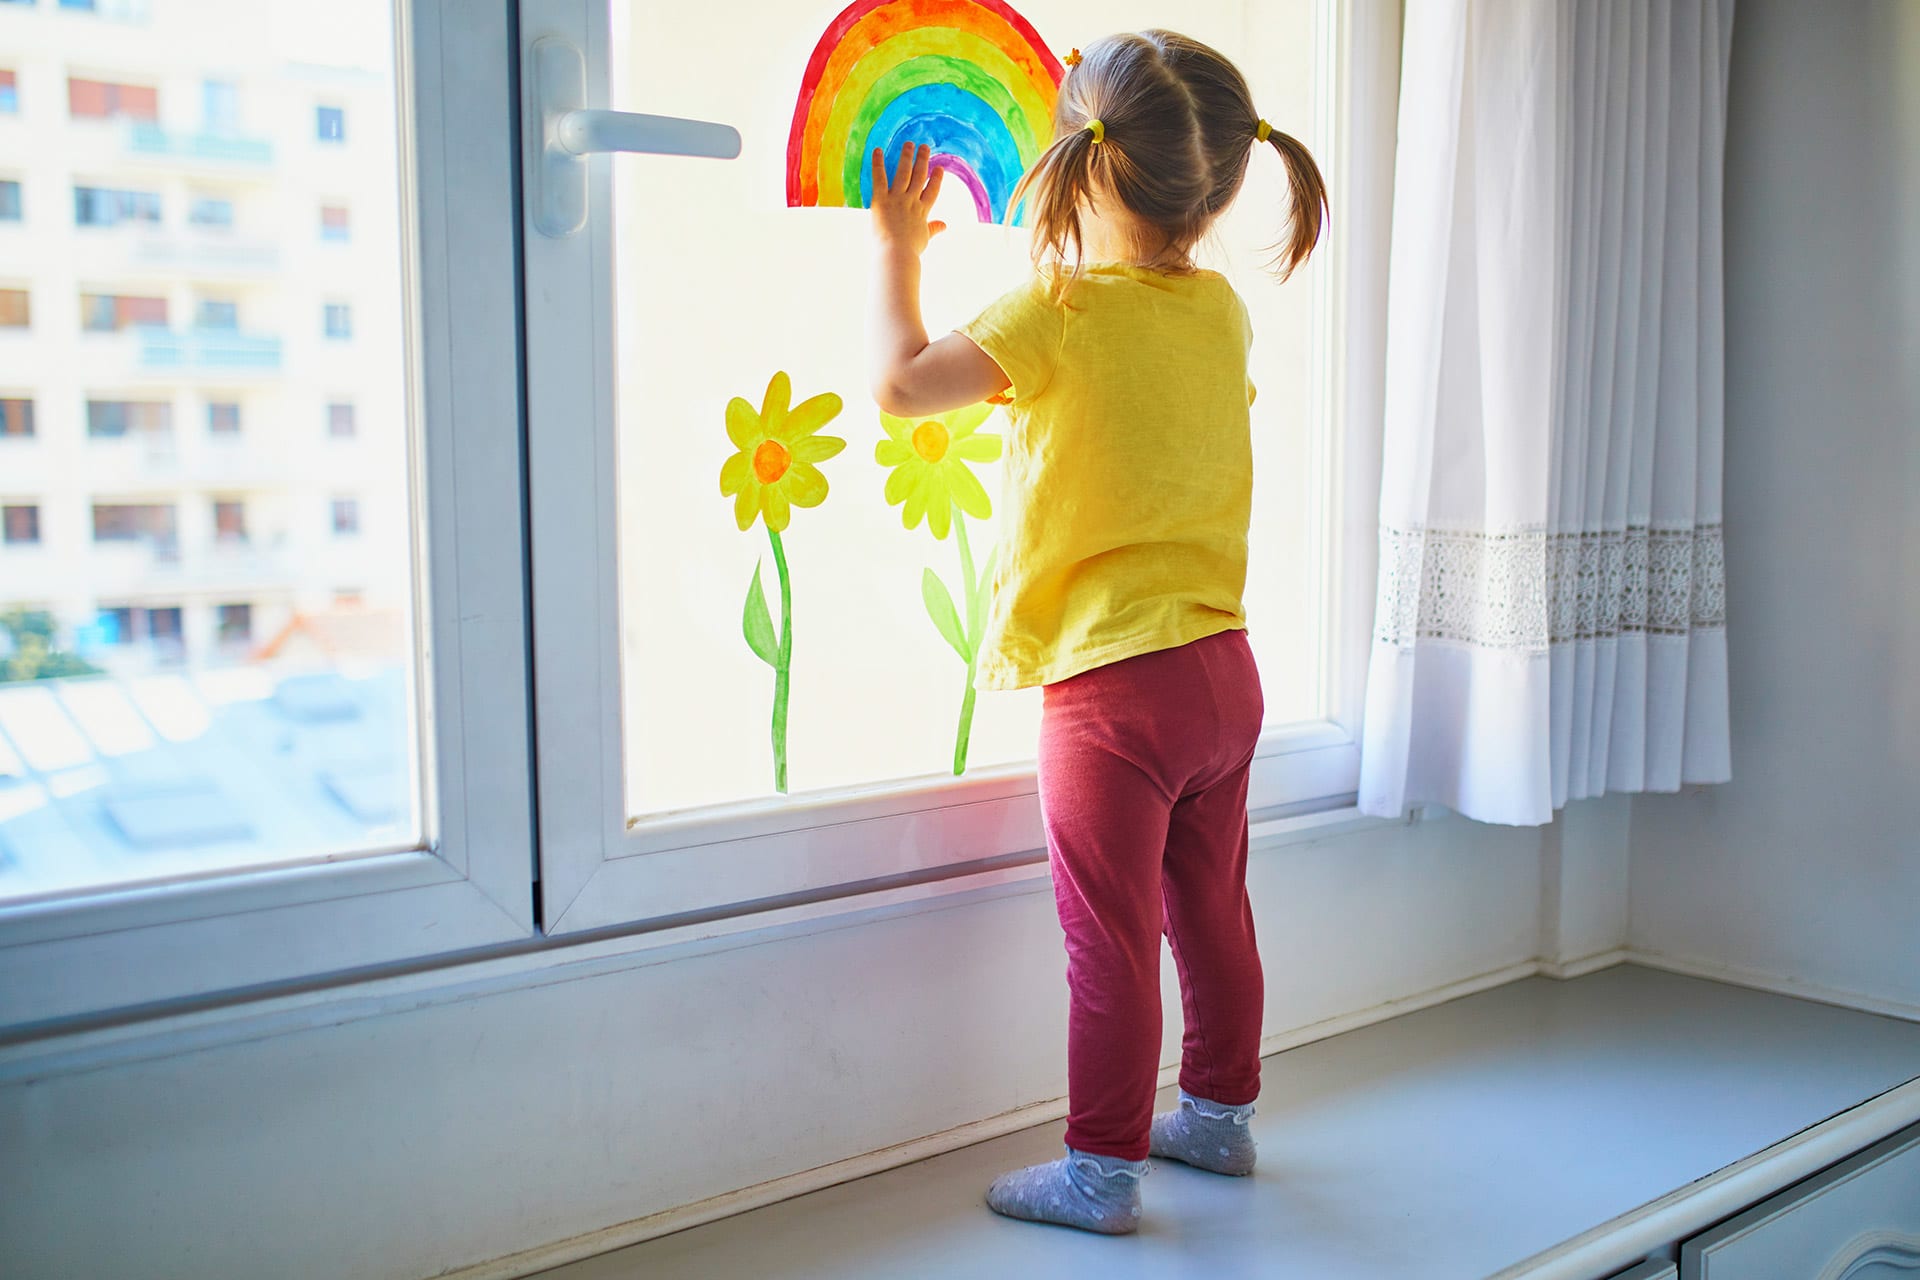  Fingerfarben-Ideen Kinder | Mädchen malt mit Fingern Regenbogen an ein Fenster